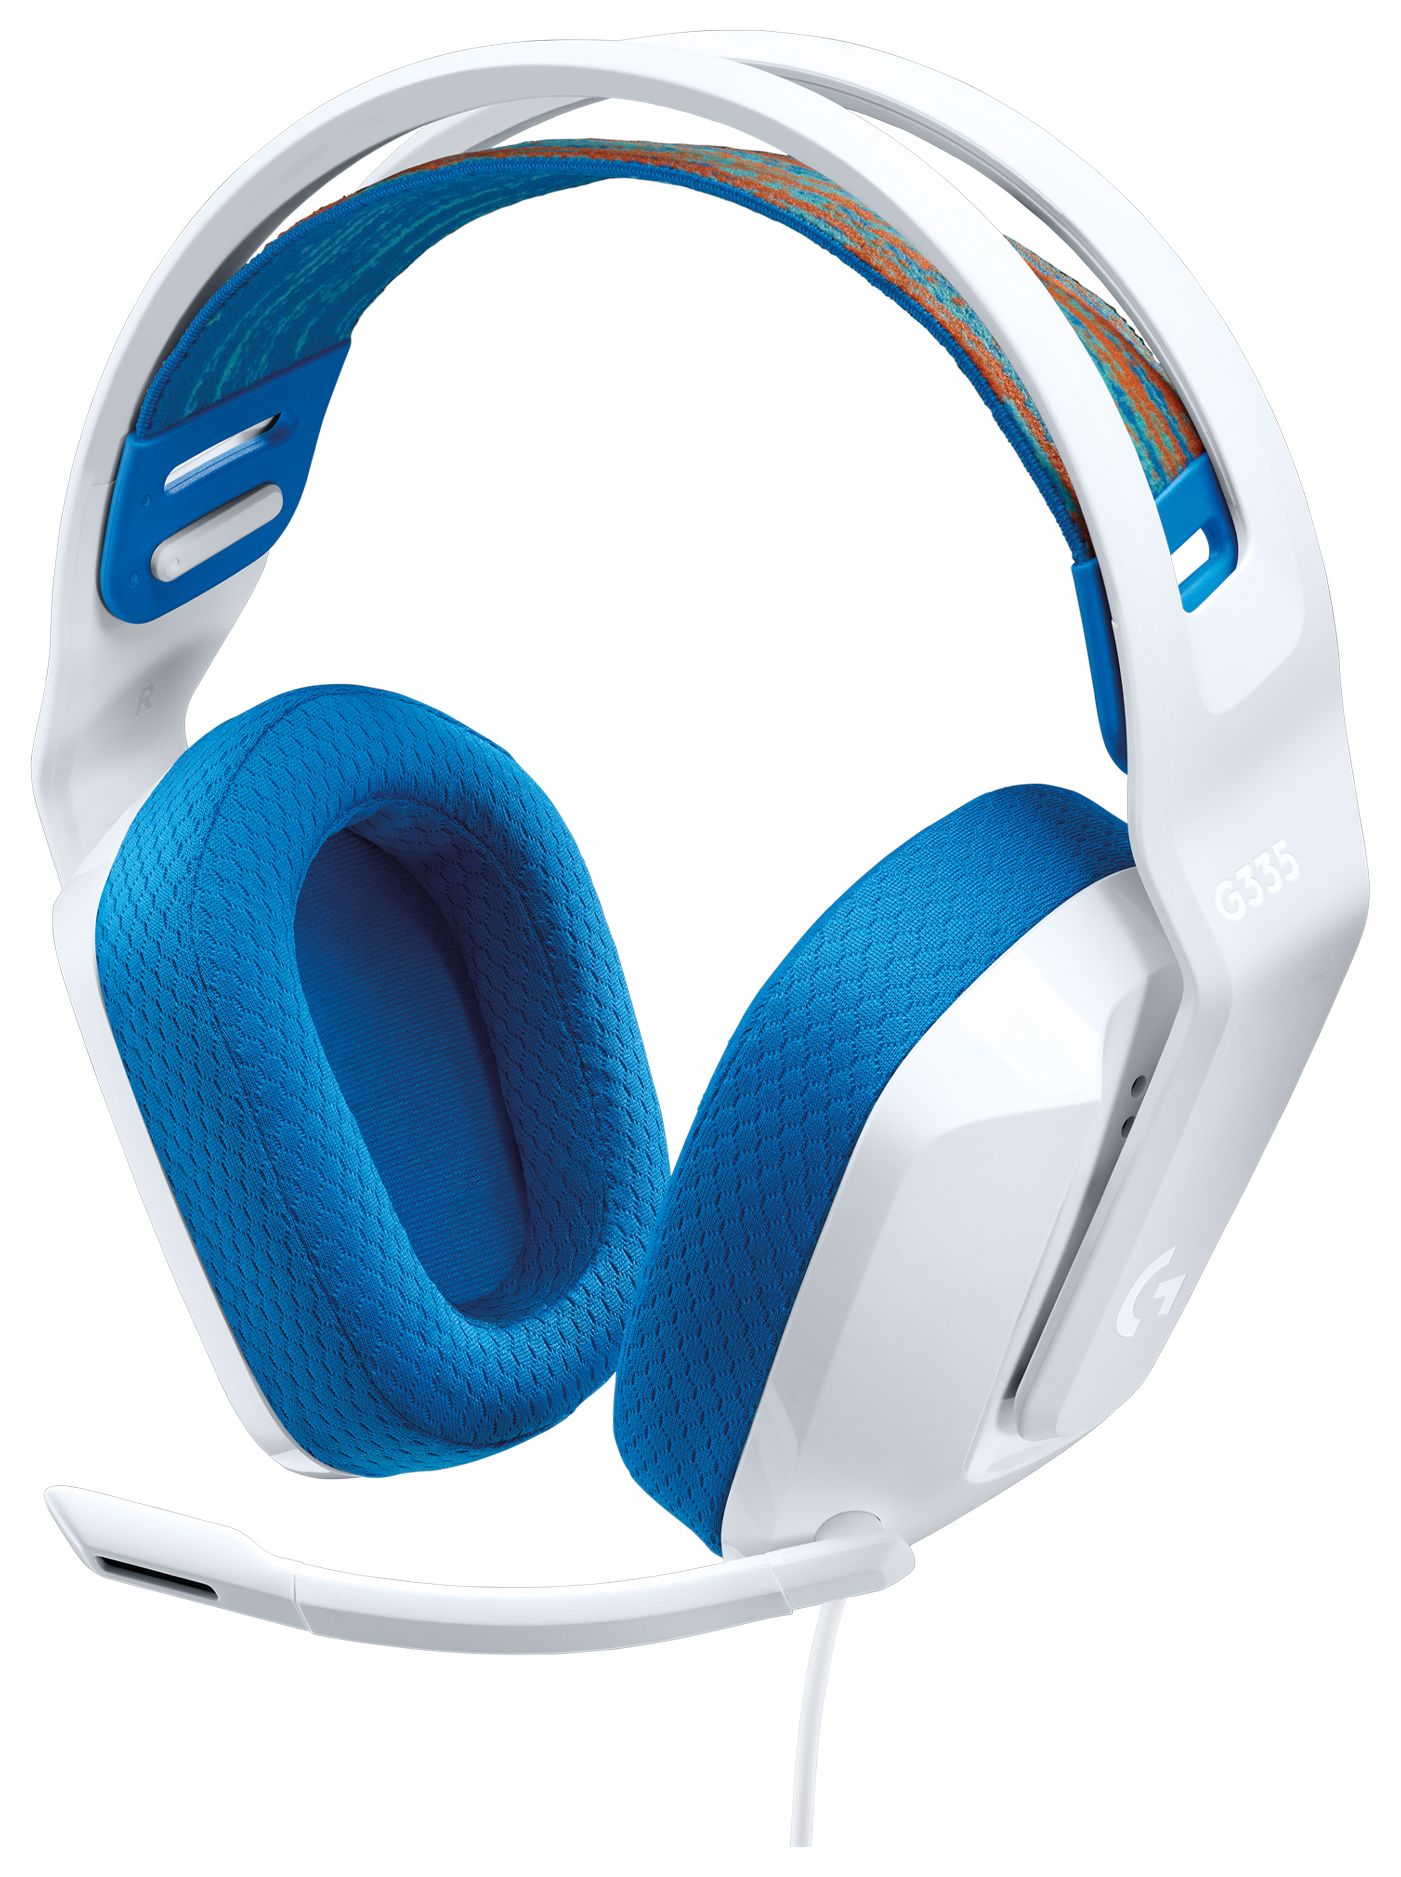 Logitech G Kopfhörer Over von (Weiß) Kabelgebunden expert G335 Ear Technomarkt